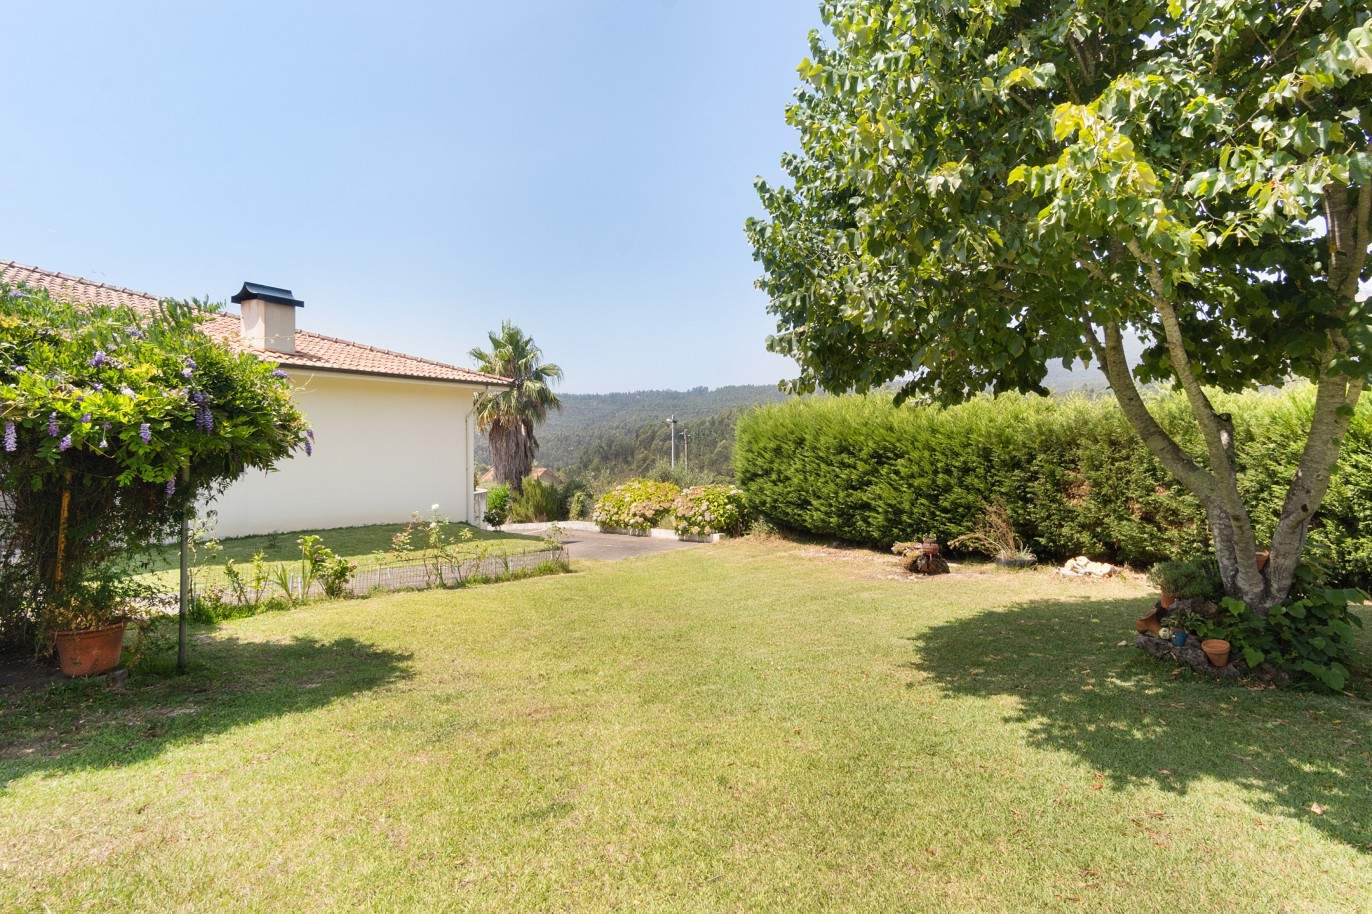 Villa mit Garten und Flussblick, zu verkaufen, in Melres, Gondomar, Porto, Portugal_204429